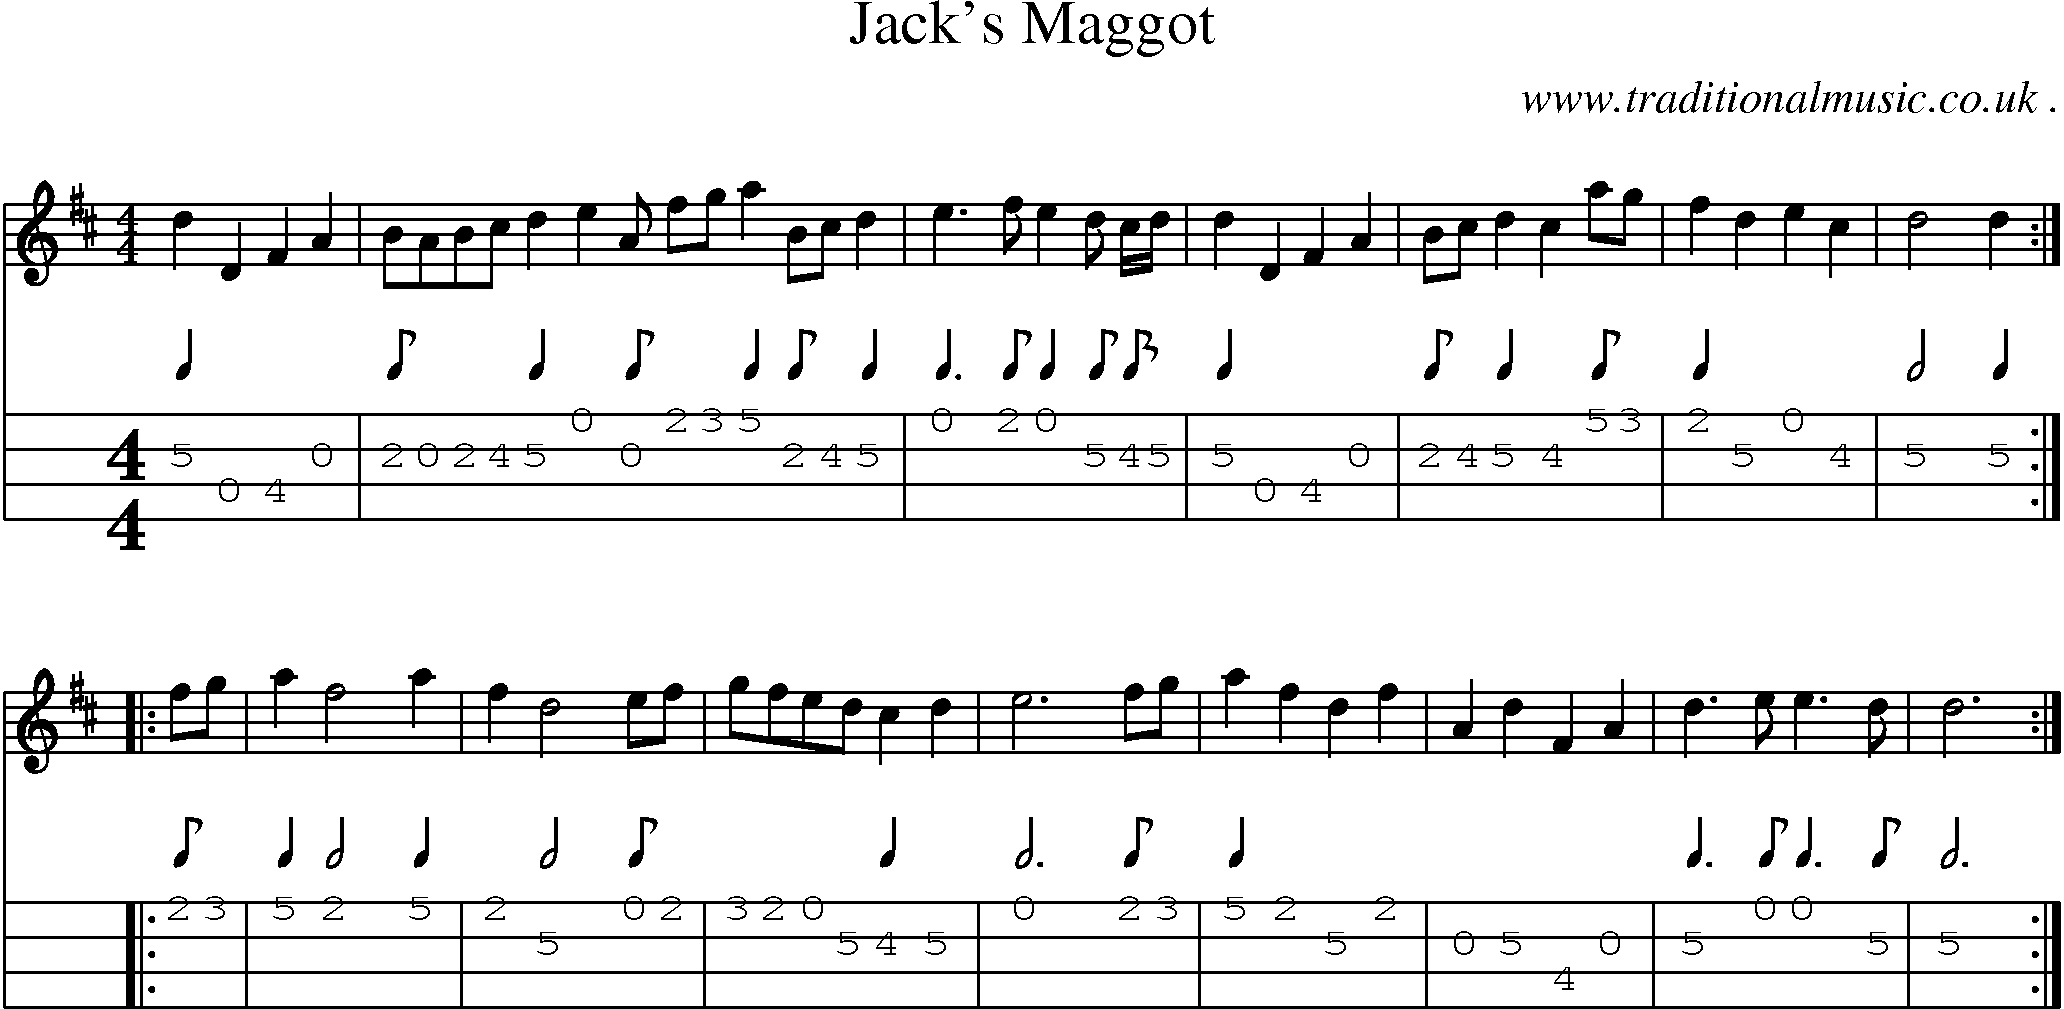 Sheet-Music and Mandolin Tabs for Jacks Maggot